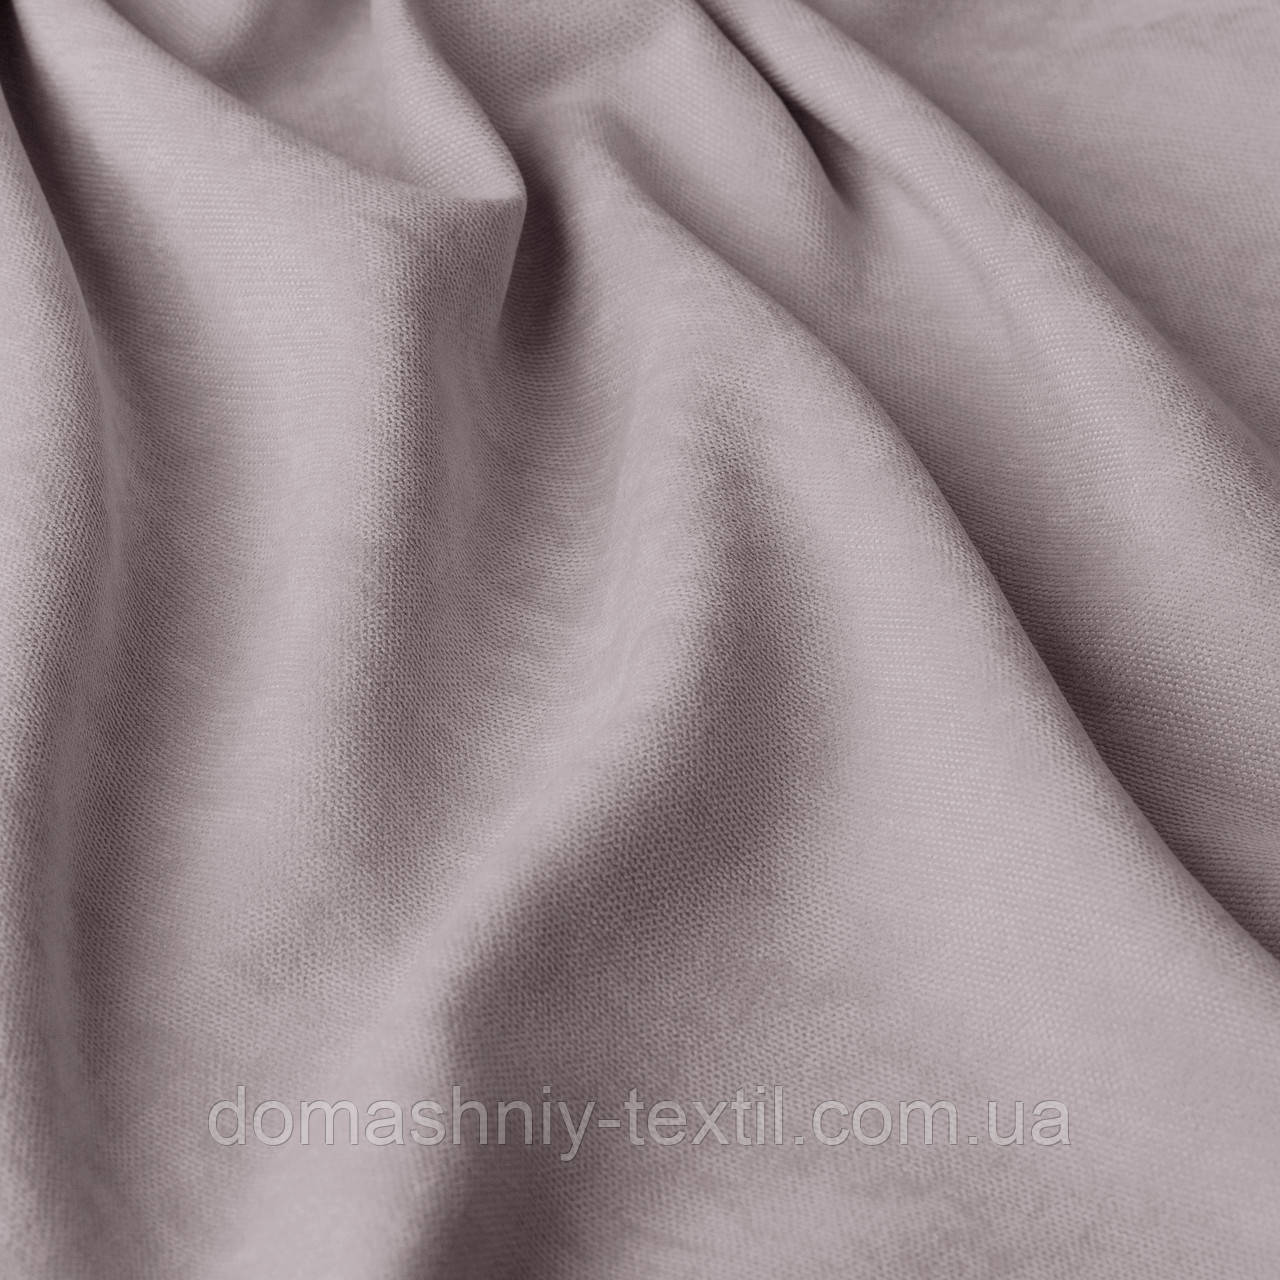 Декоративна тканина Велюр (мікровелюр), для штор в спальню, дитячу, зал, ширина 295 см, сіро-рожевий